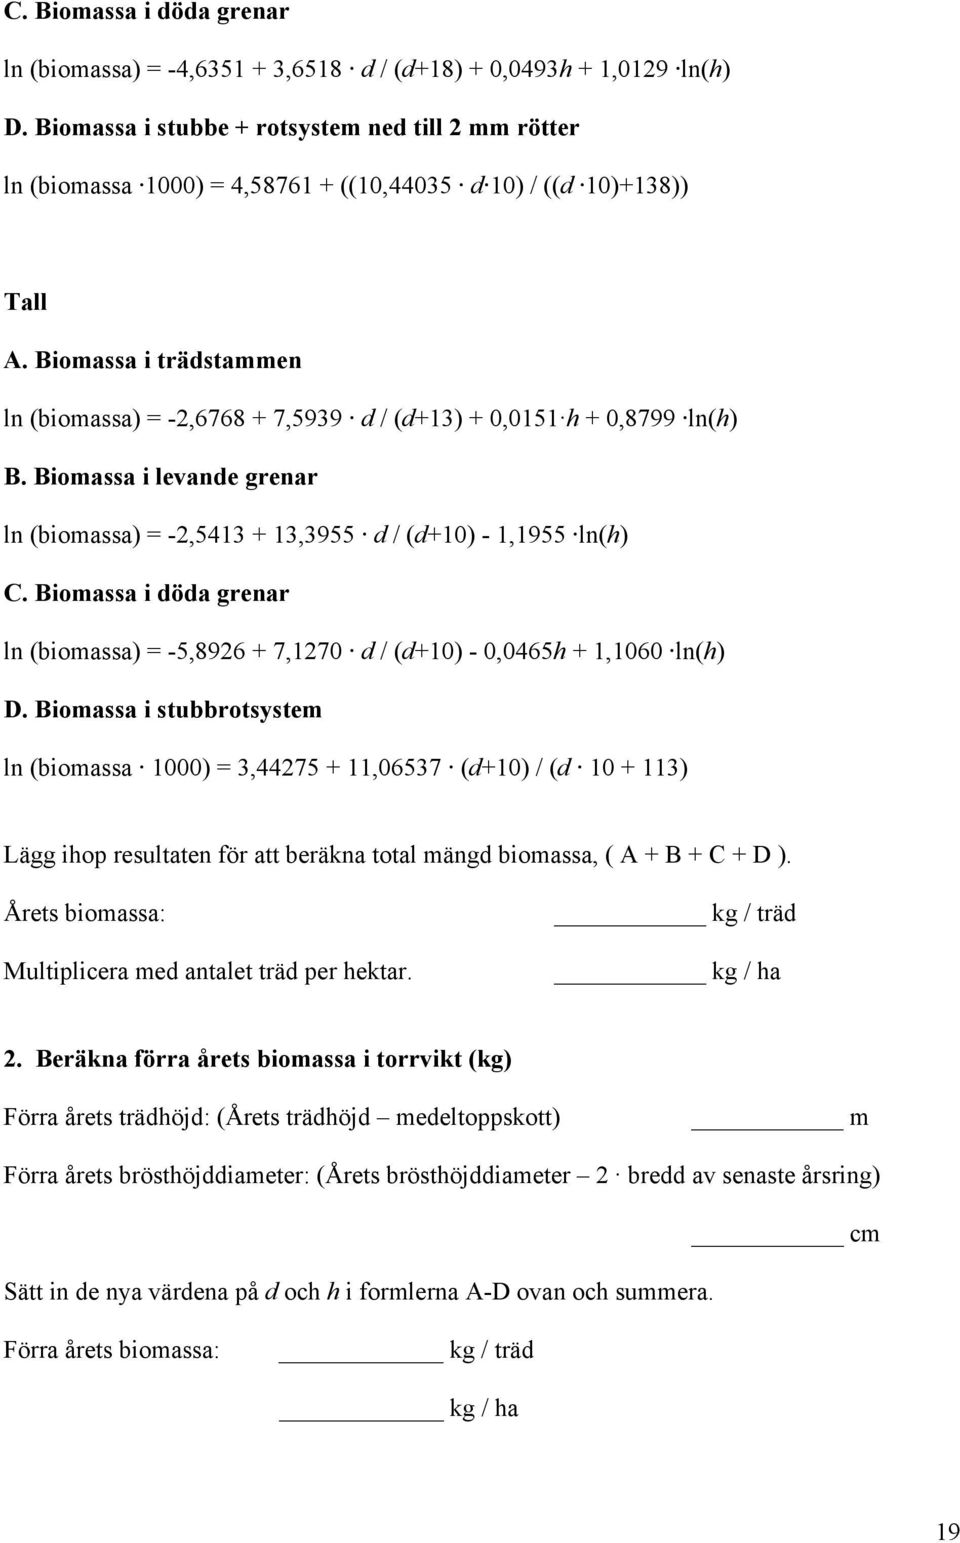 Biomassa i trädstammen ln (biomassa) = -2,6768 + 7,5939 d / (d+13) + 0,0151 h + 0,8799 ln(h) B. Biomassa i levande grenar ln (biomassa) = -2,5413 + 13,3955 d / (d+10) - 1,1955 ln(h) C.